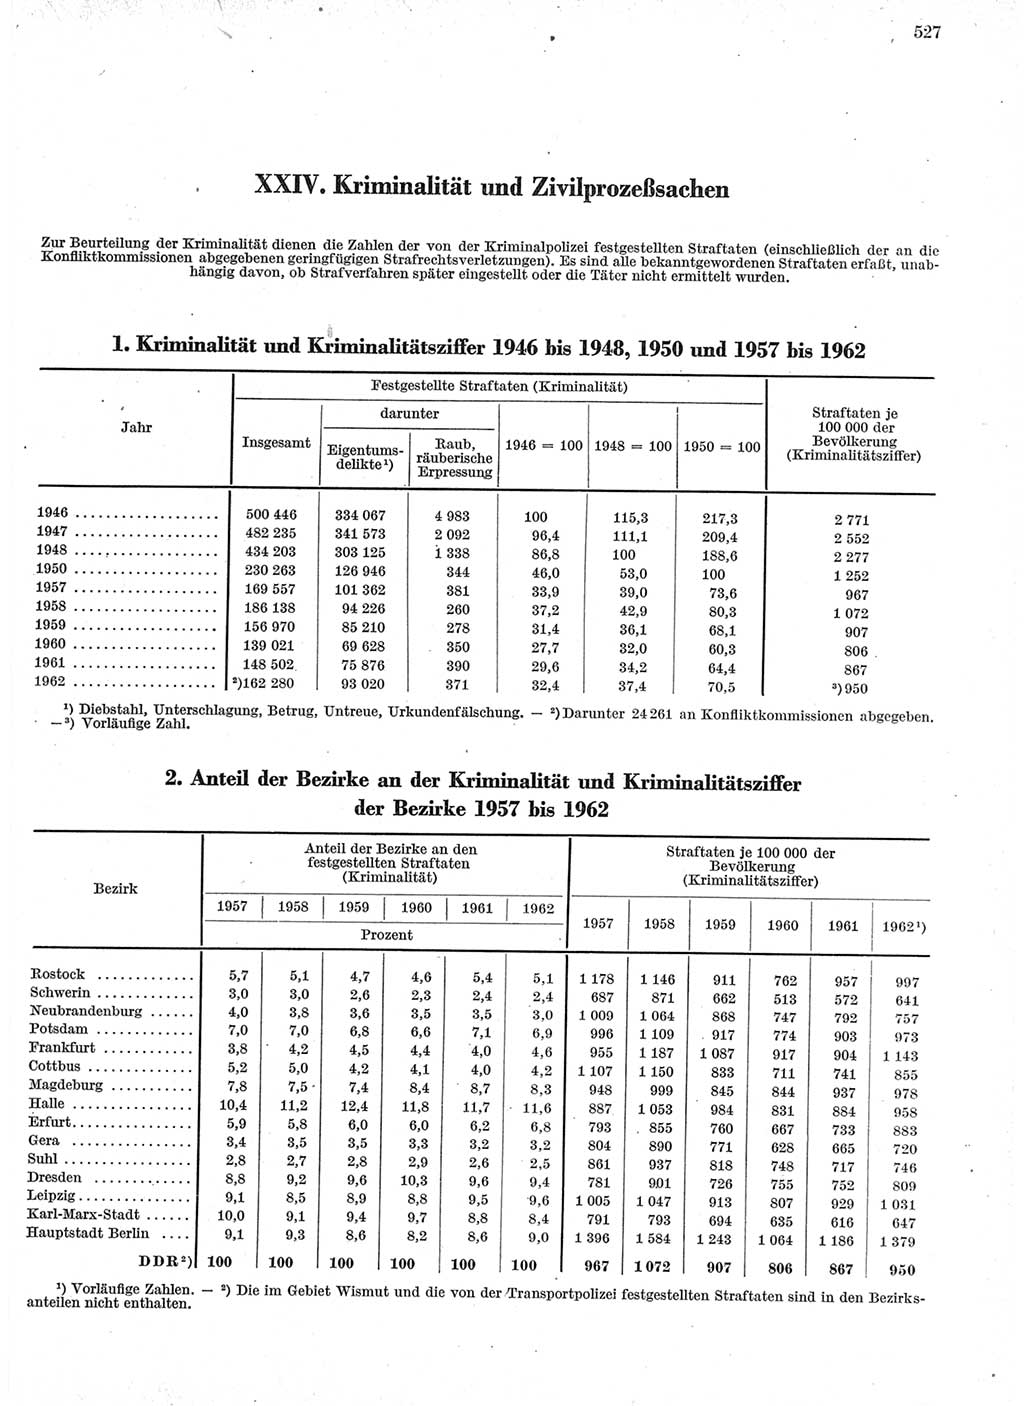 Statistisches Jahrbuch der Deutschen Demokratischen Republik (DDR) 1963, Seite 527 (Stat. Jb. DDR 1963, S. 527)